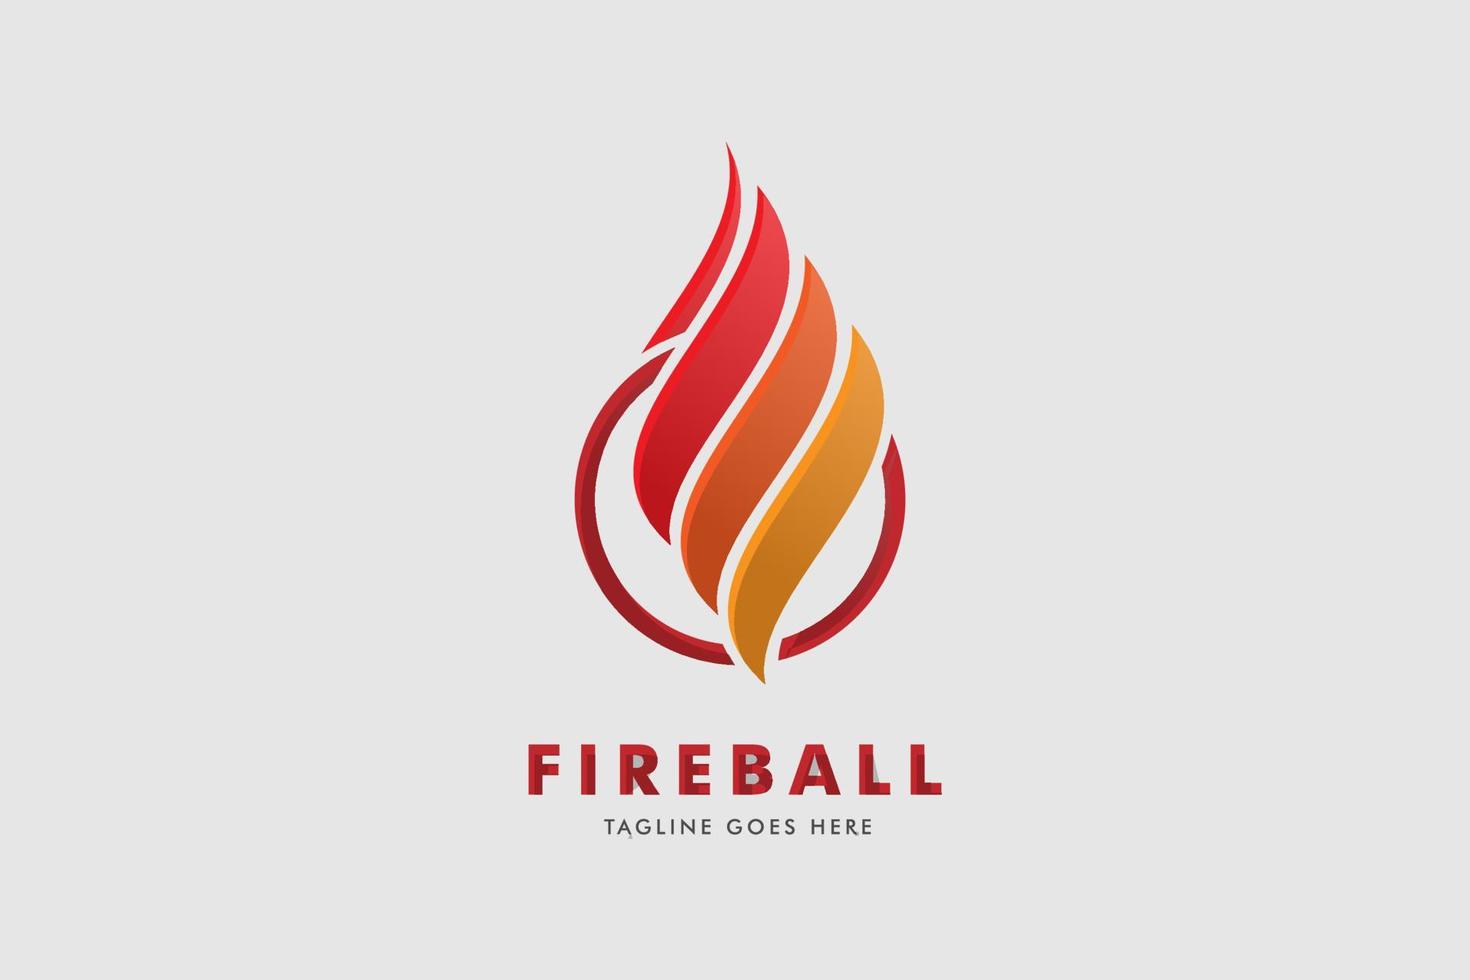 logotipo de bola de fuego, plantilla de vector de diseño abstracto de llama de fuego